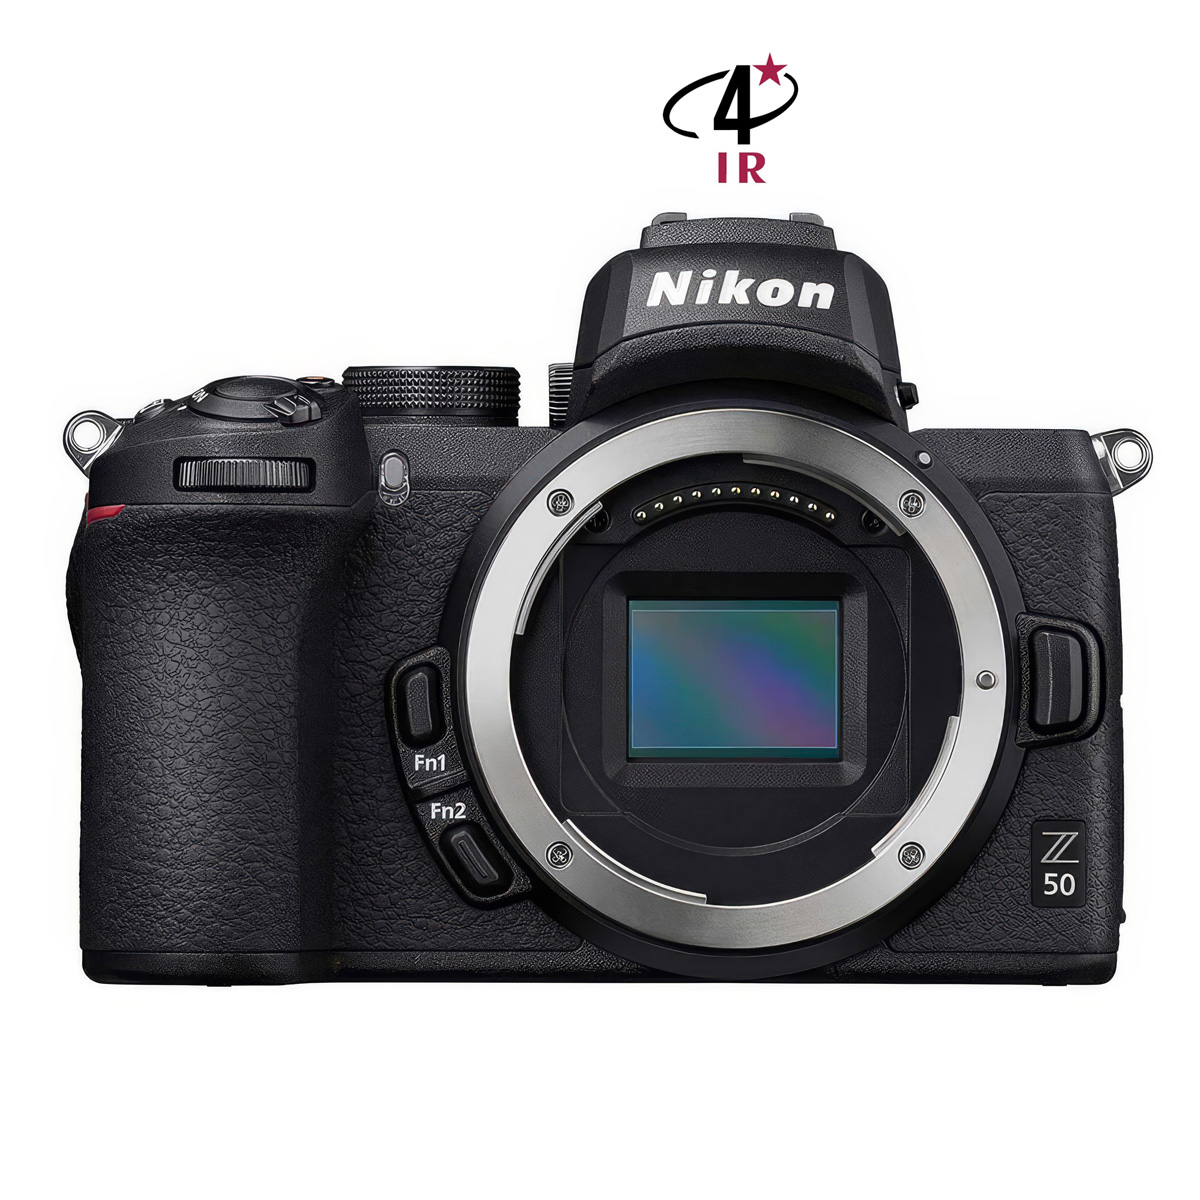 Hybride Nikon Z50 neuf défiltré + refiltré 4'IR New 4'IR Cameras